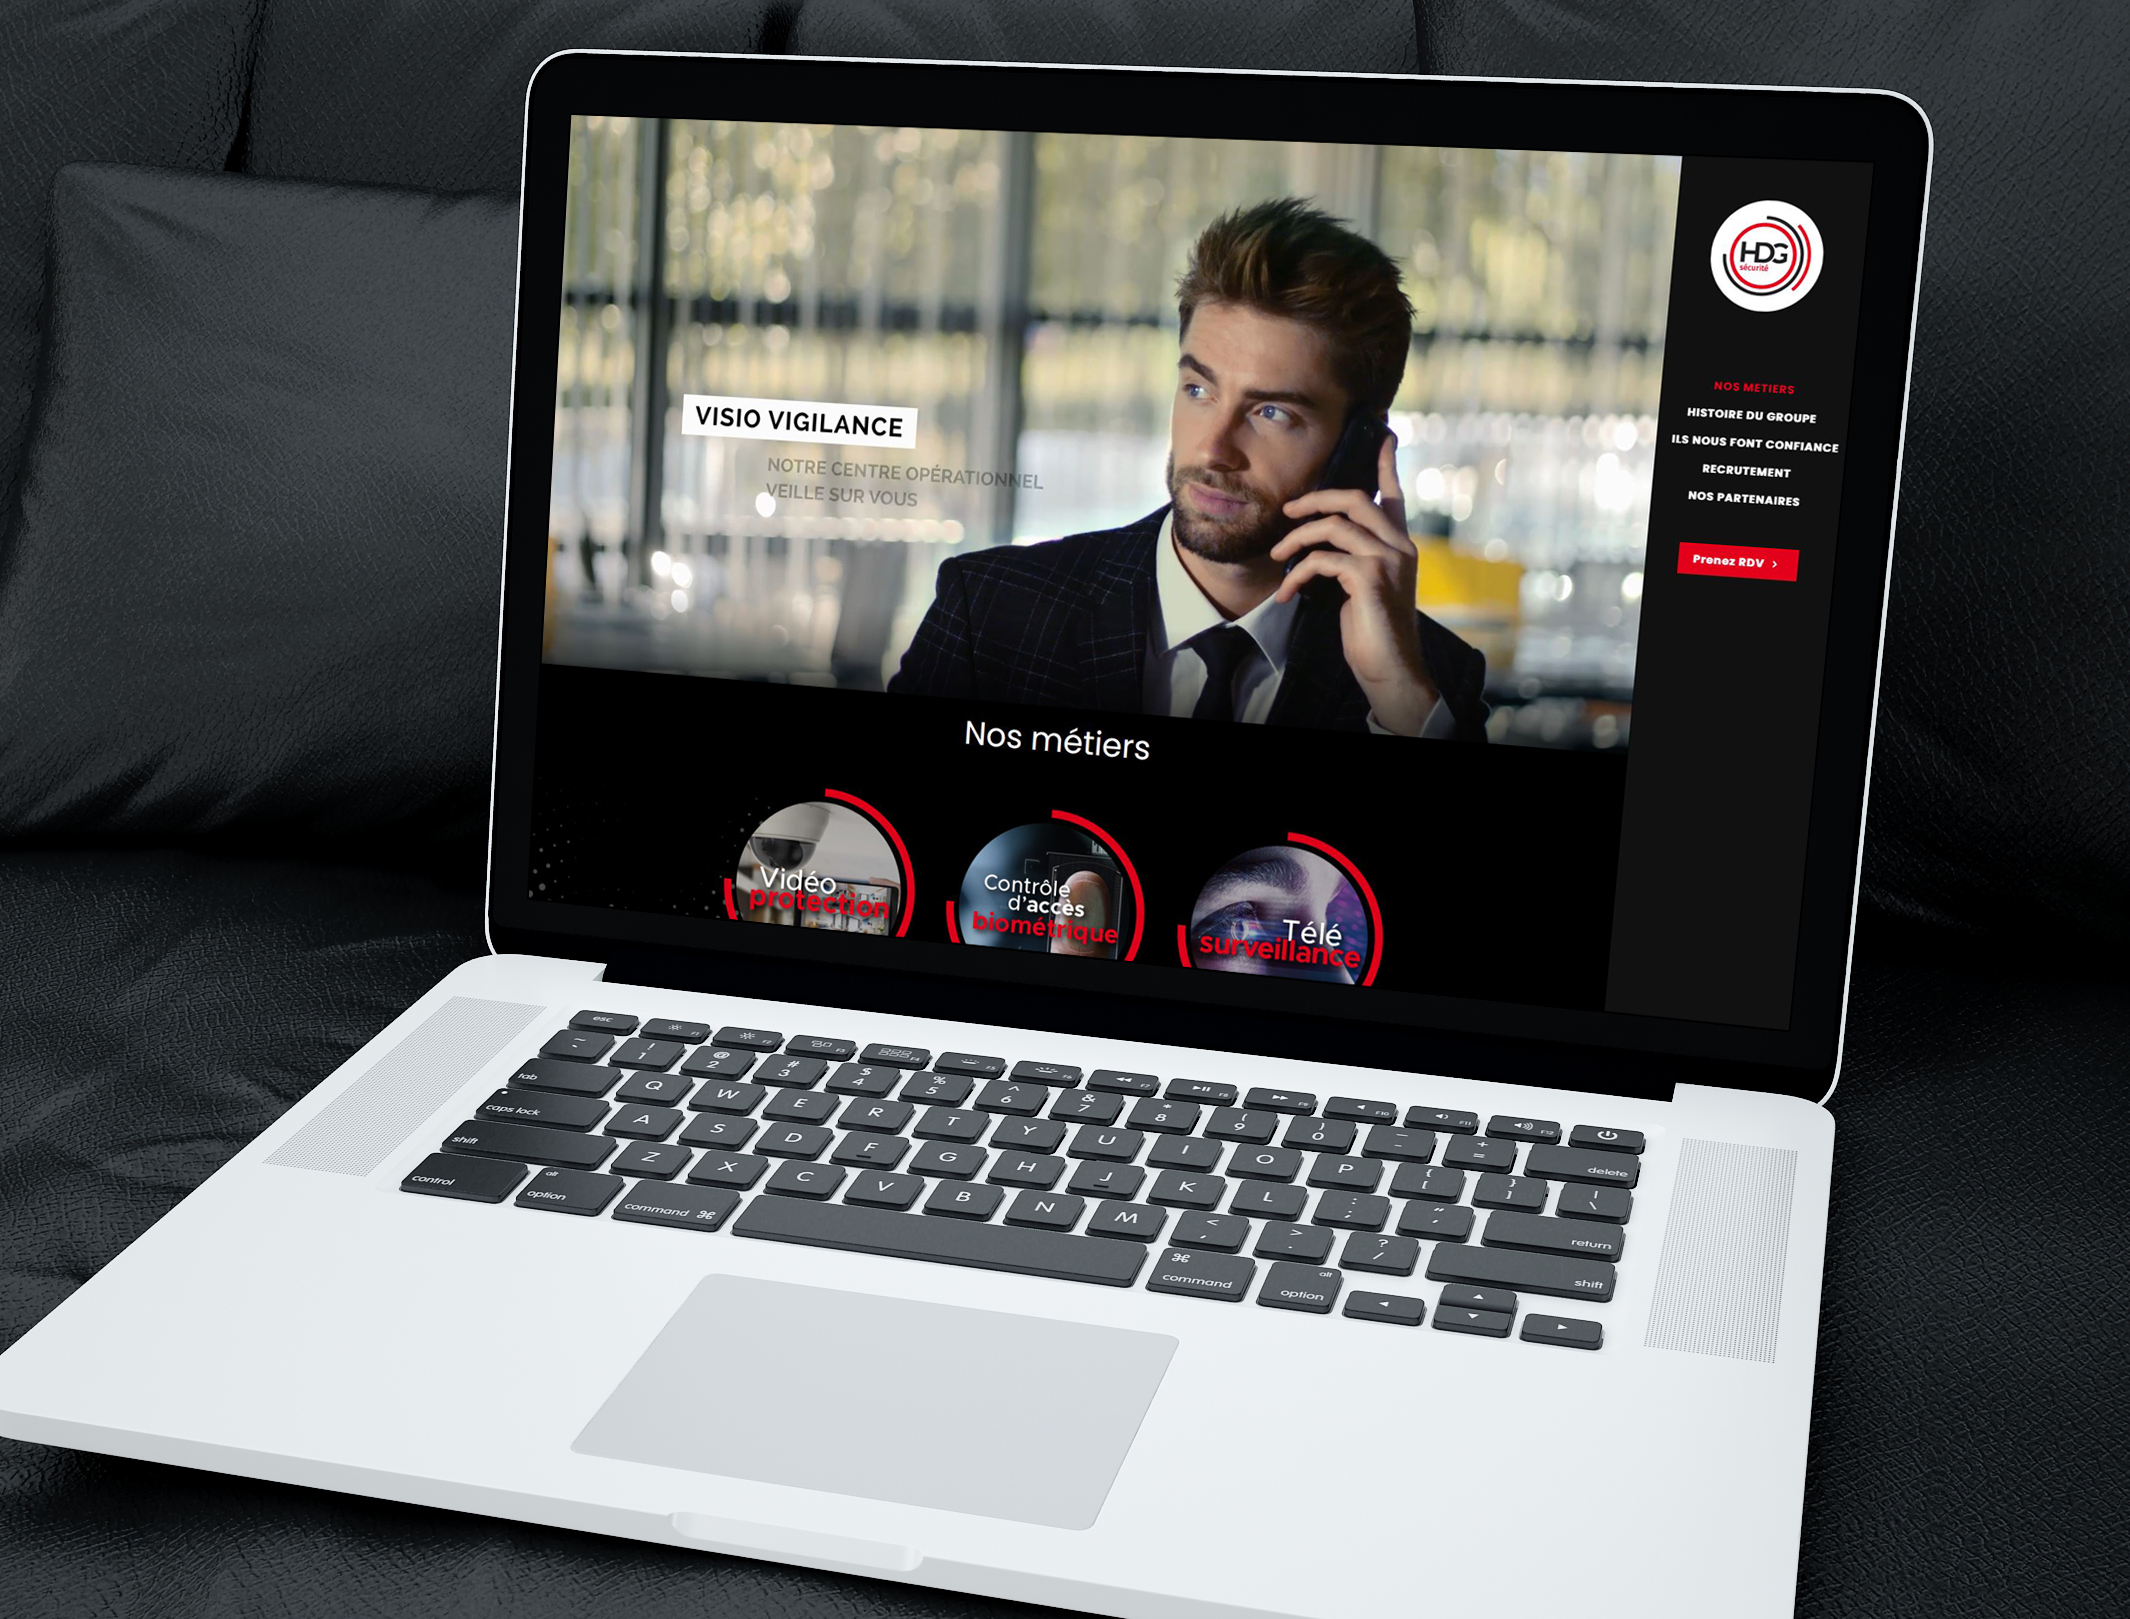 Identité visuelle, supports de communication et site internet pour une entreprise de sécurité